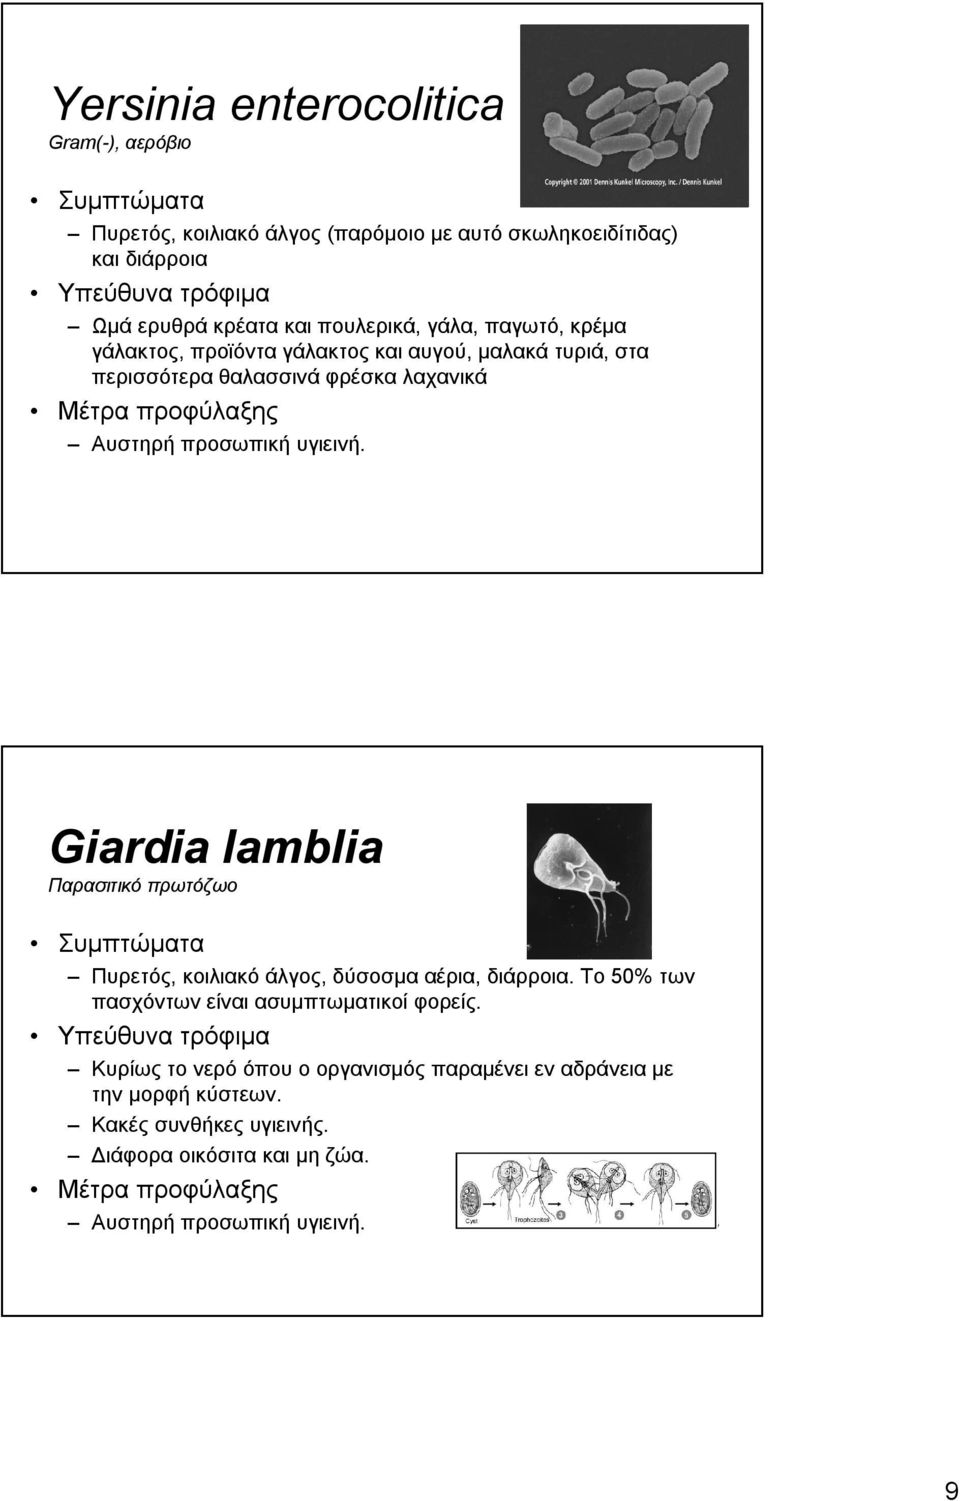 υγιεινή. Giardia lamblia Παρασιτικό πρωτόζωο Πυρετός, κοιλιακό άλγος, δύσοσμα αέρια, διάρροια. Το 50% των πασχόντων είναι ασυμπτωματικοί φορείς.